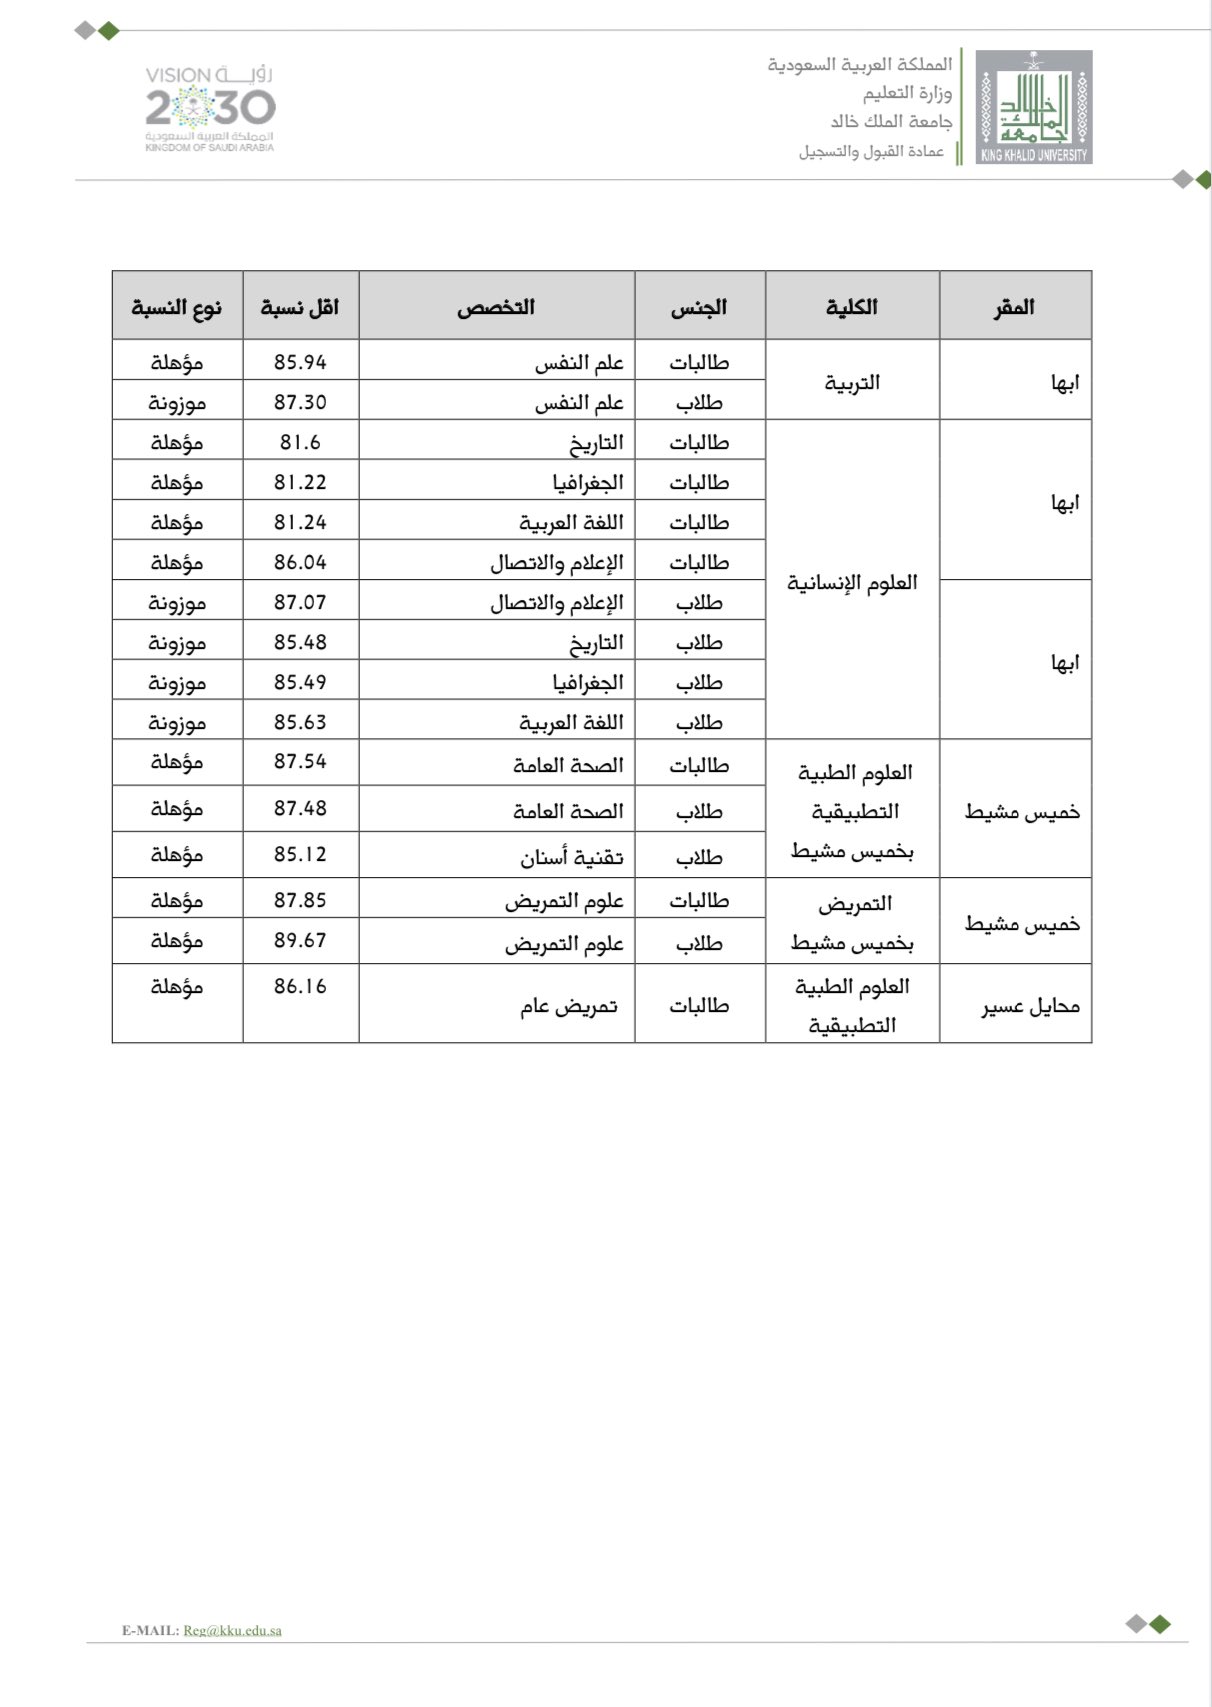 نتائج القبول جامعة الملك خالد